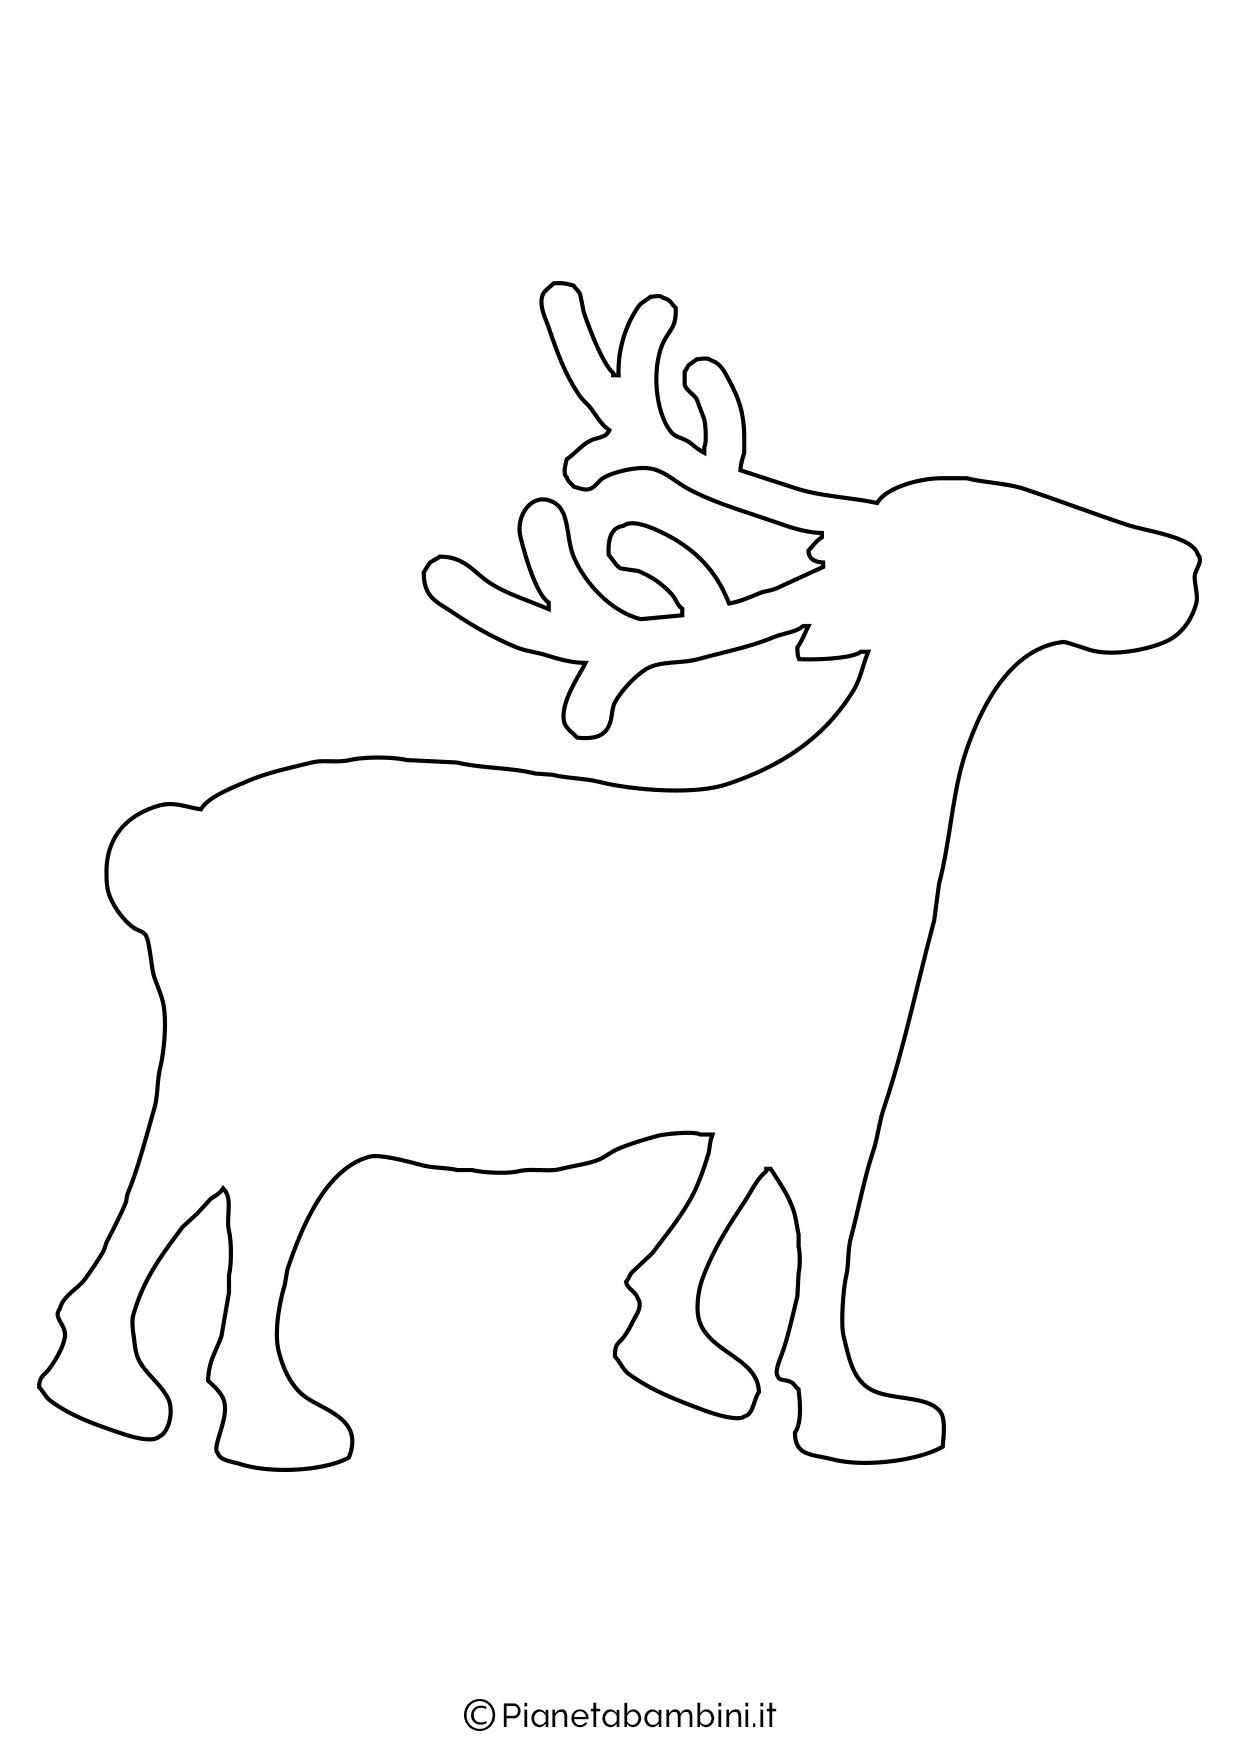 Трафарет оленя для рисования